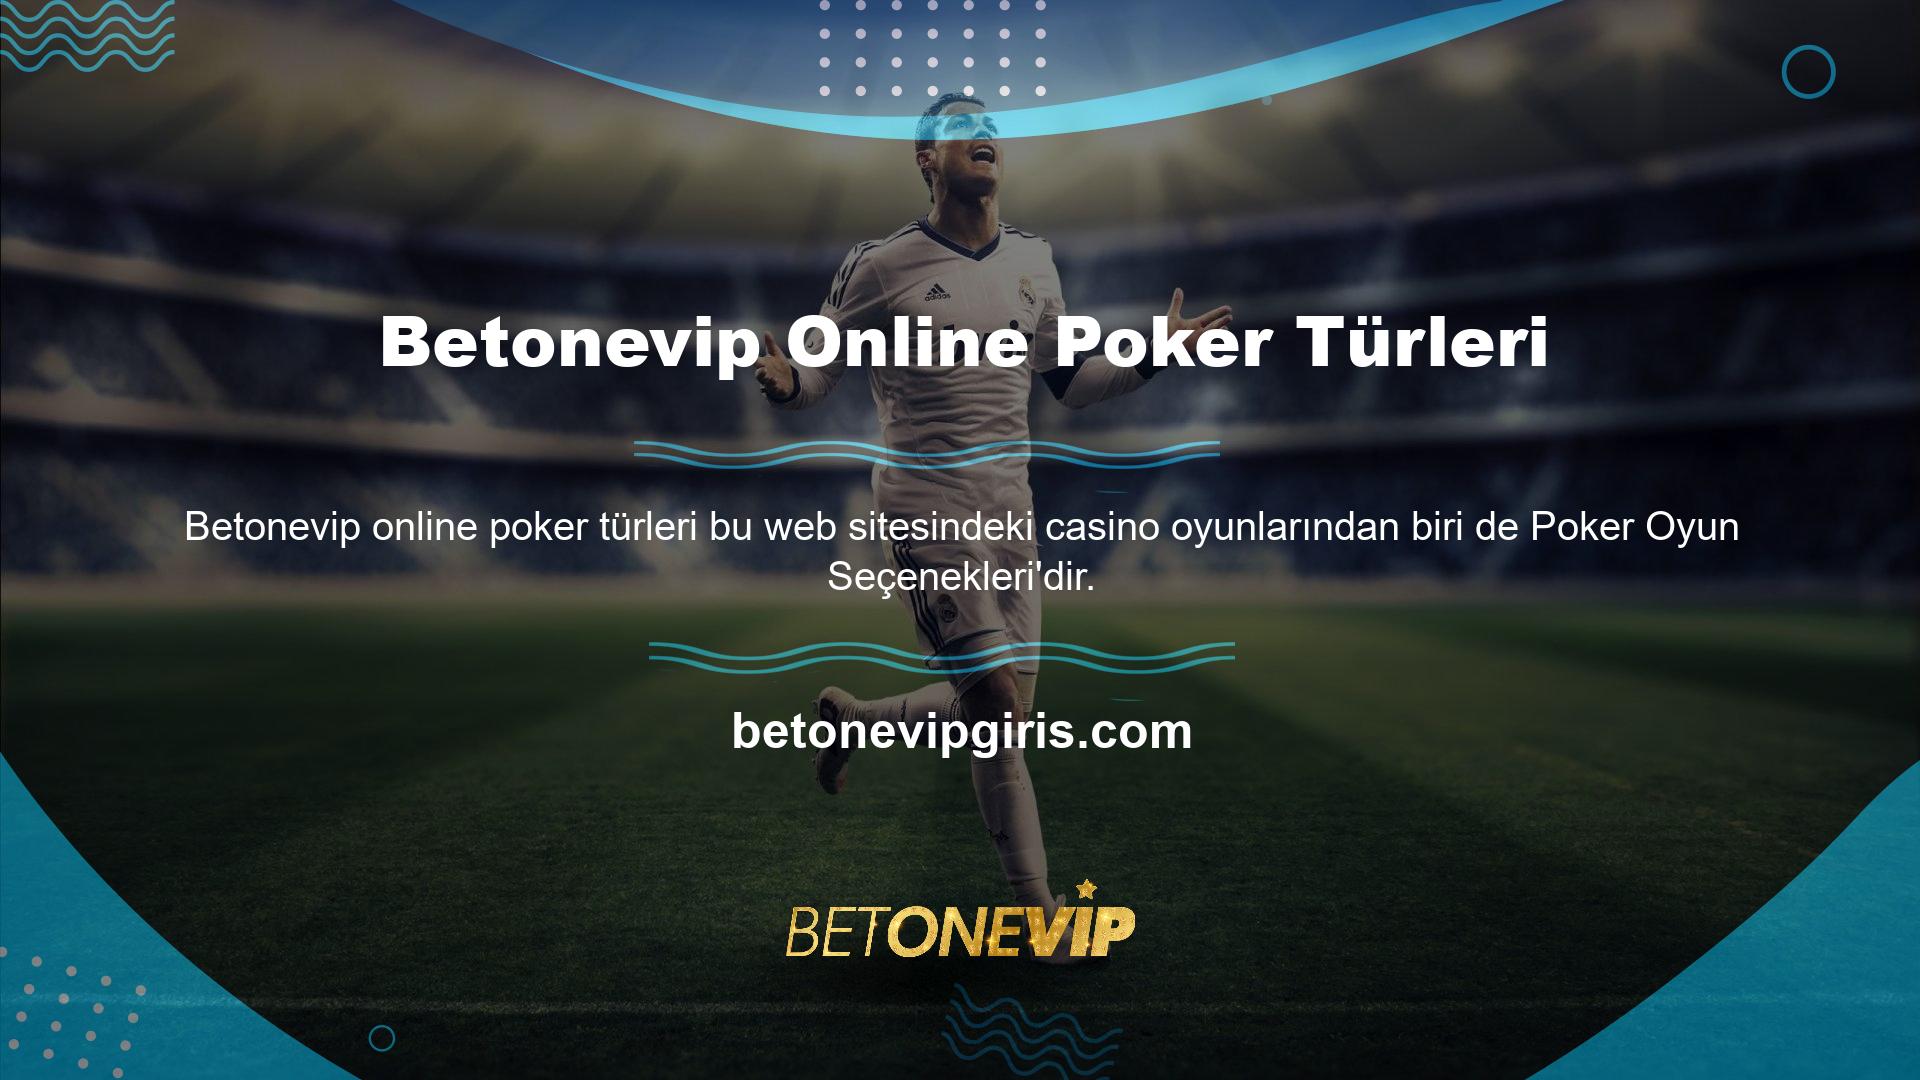 Betonevip Online Poker Çeşitleri Poker çeşitlerine bakıldığında bu bölümün müşterilerine oldukça geniş bir çeşitlilik sunduğunu görebilirsiniz